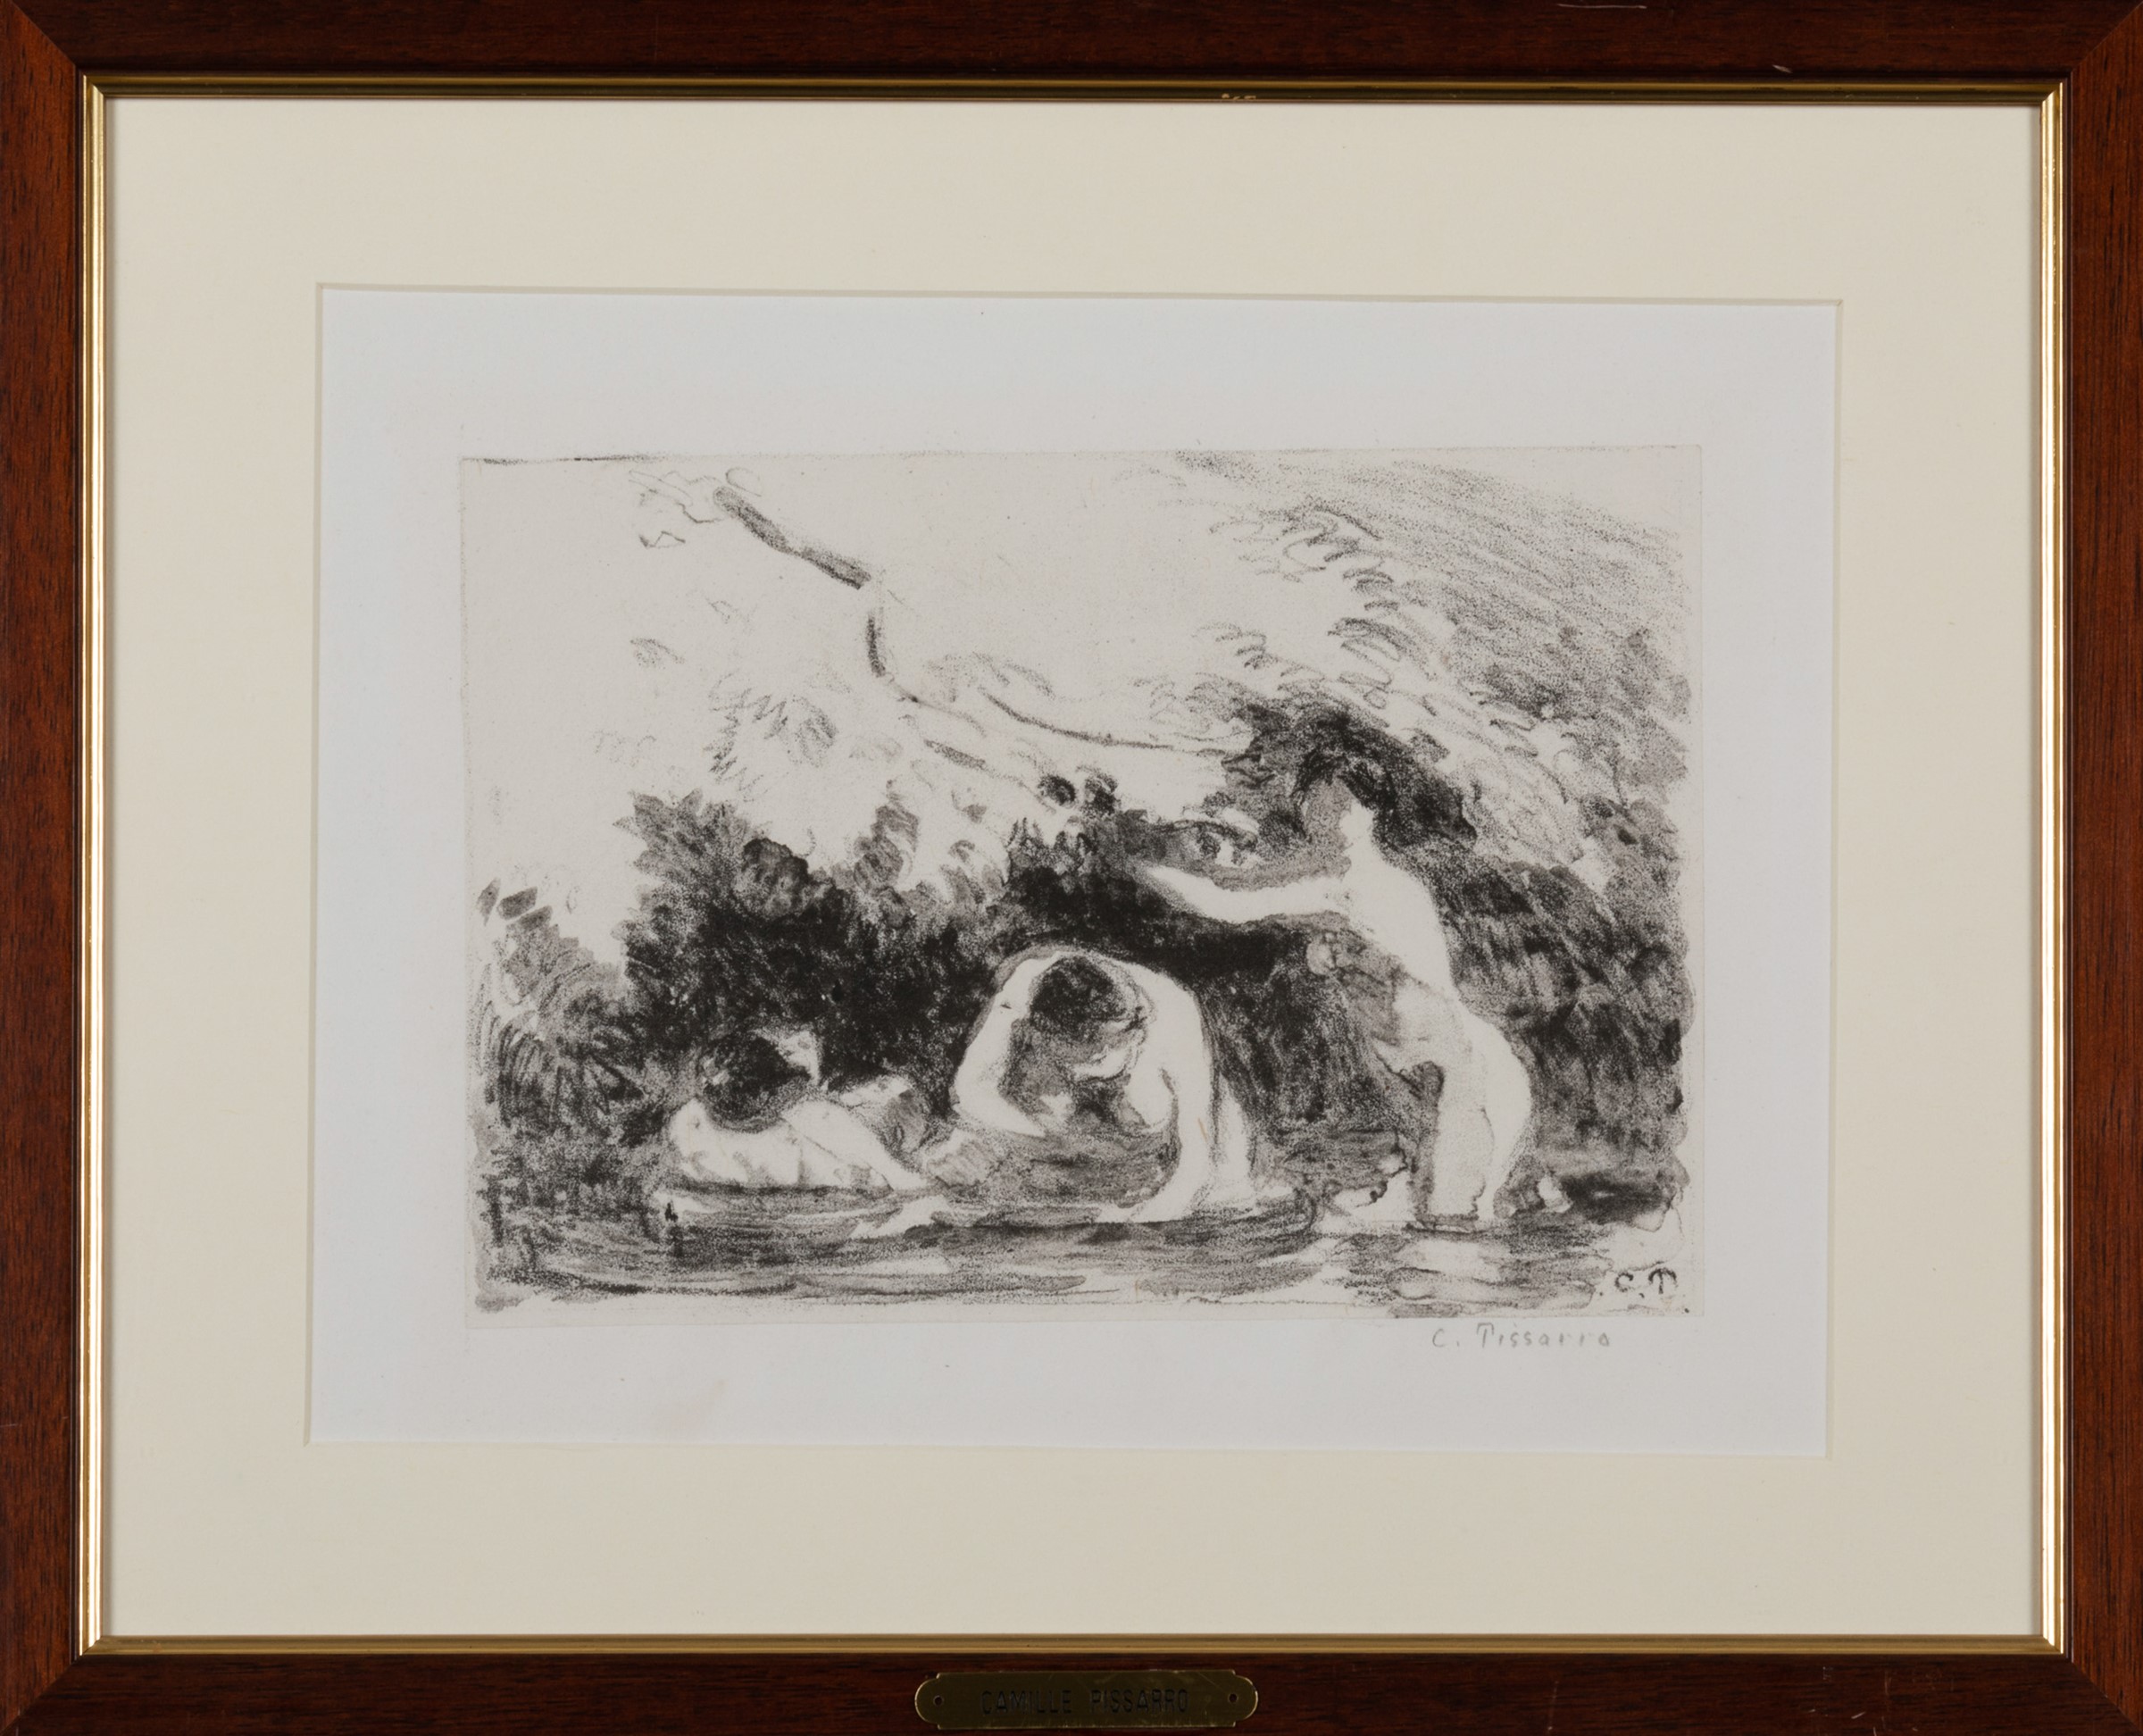 C. Pissarro, Baigneuses à l'ombre des berges boisées, 1895 - Image 2 of 3